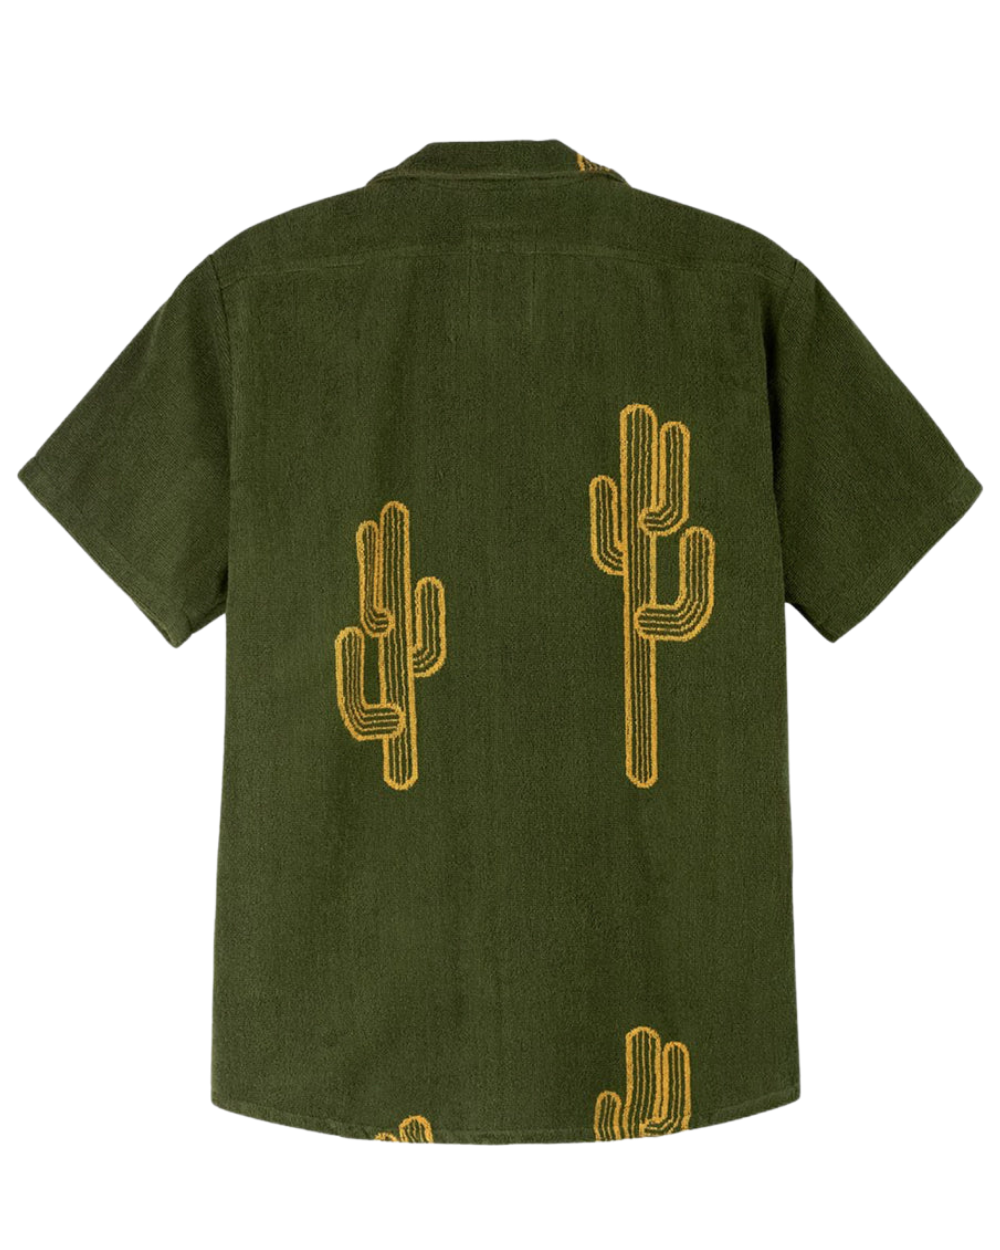 OAS Terry Cloth Shirt Cactus 